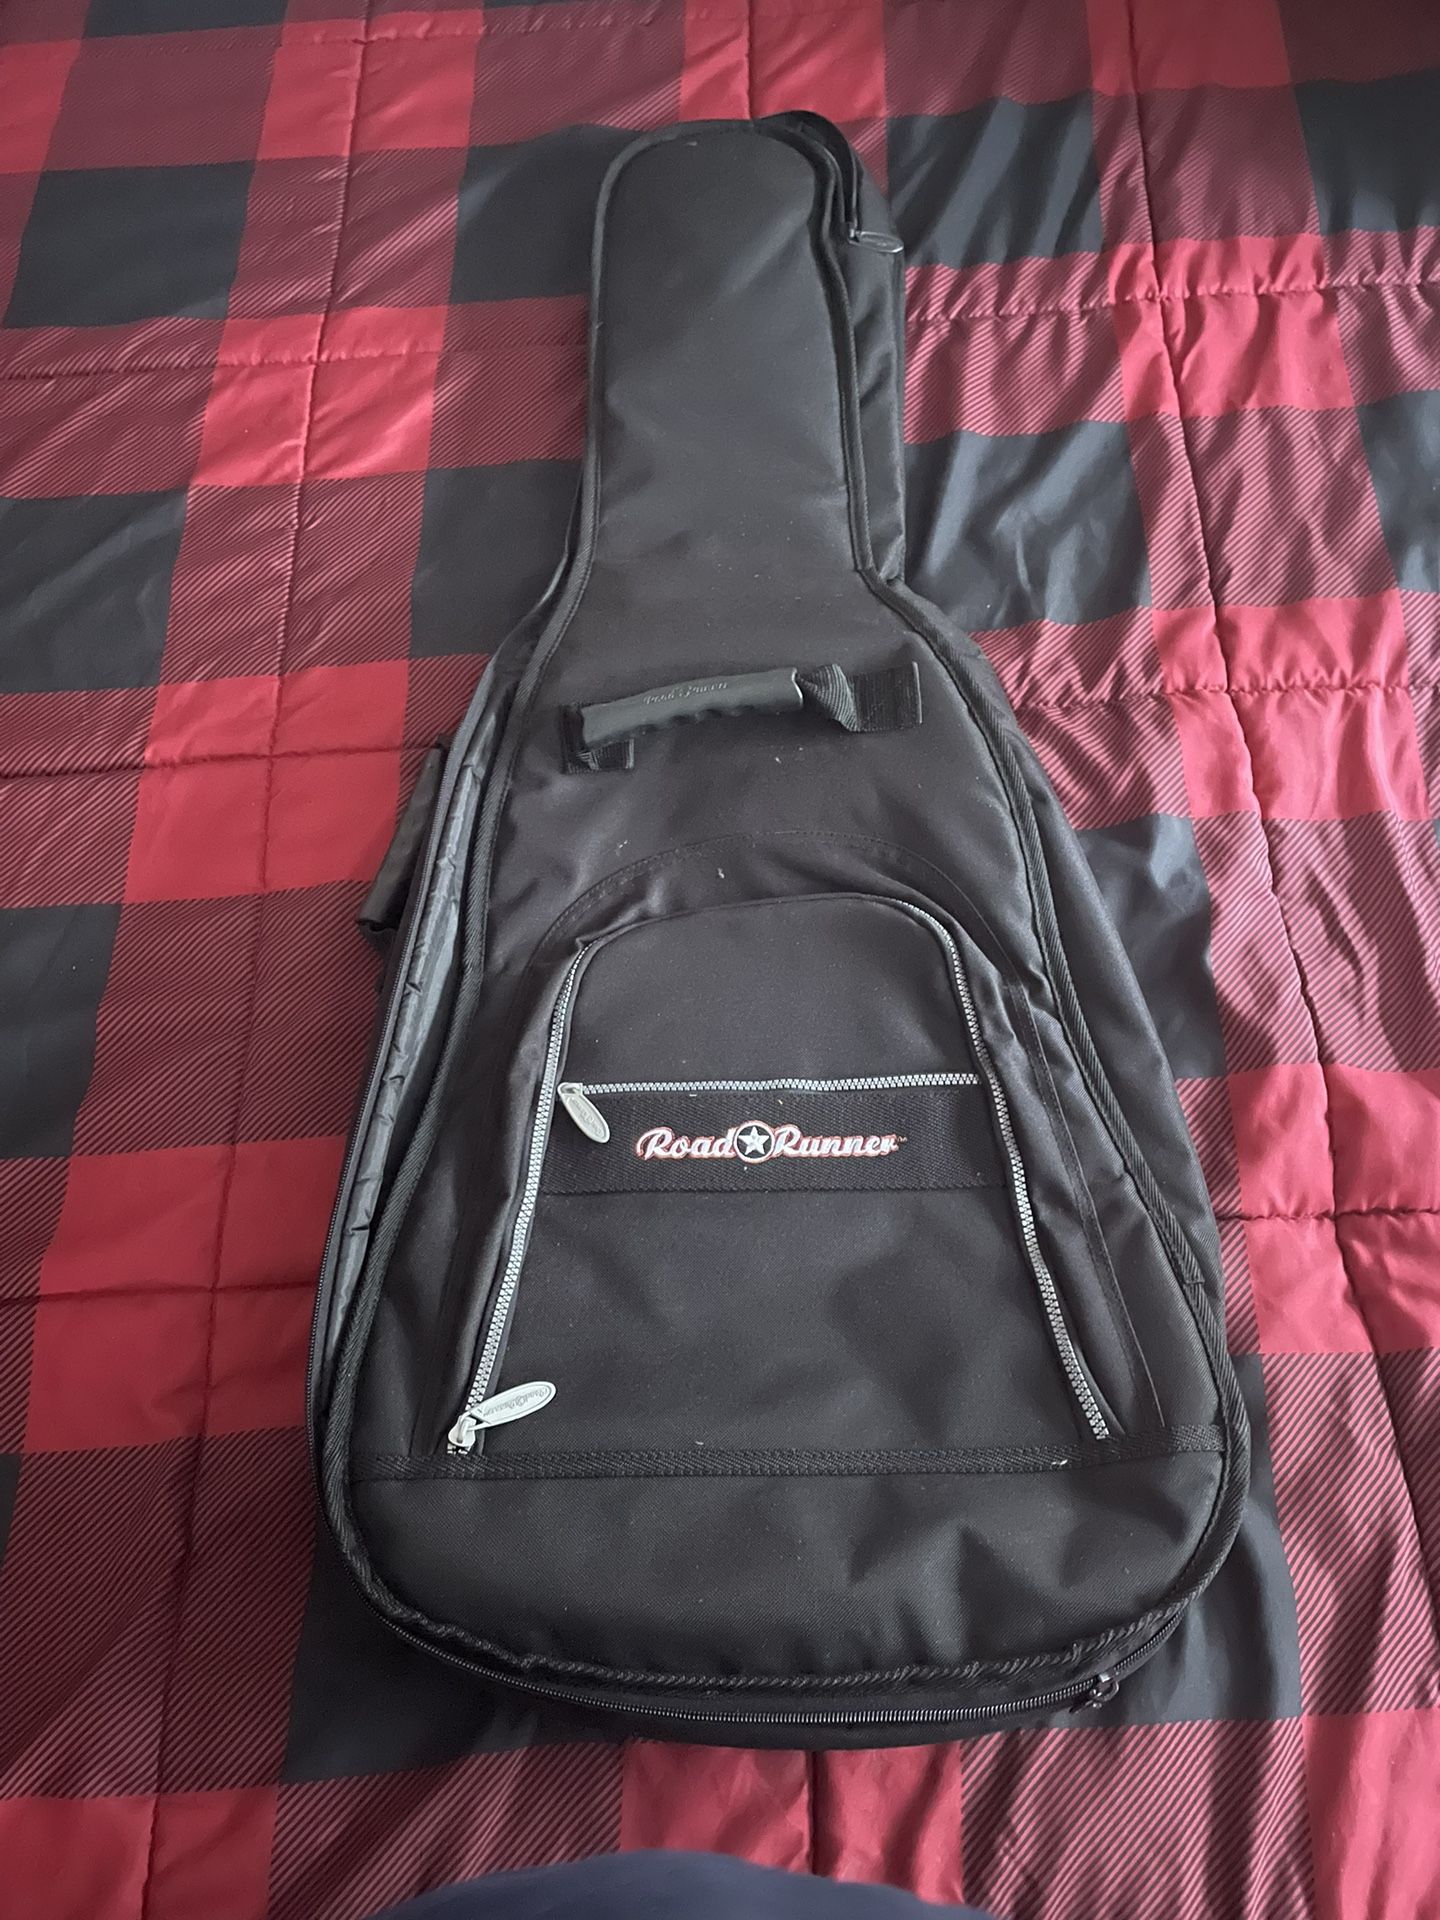 Road Runner Guitar Gear Bag